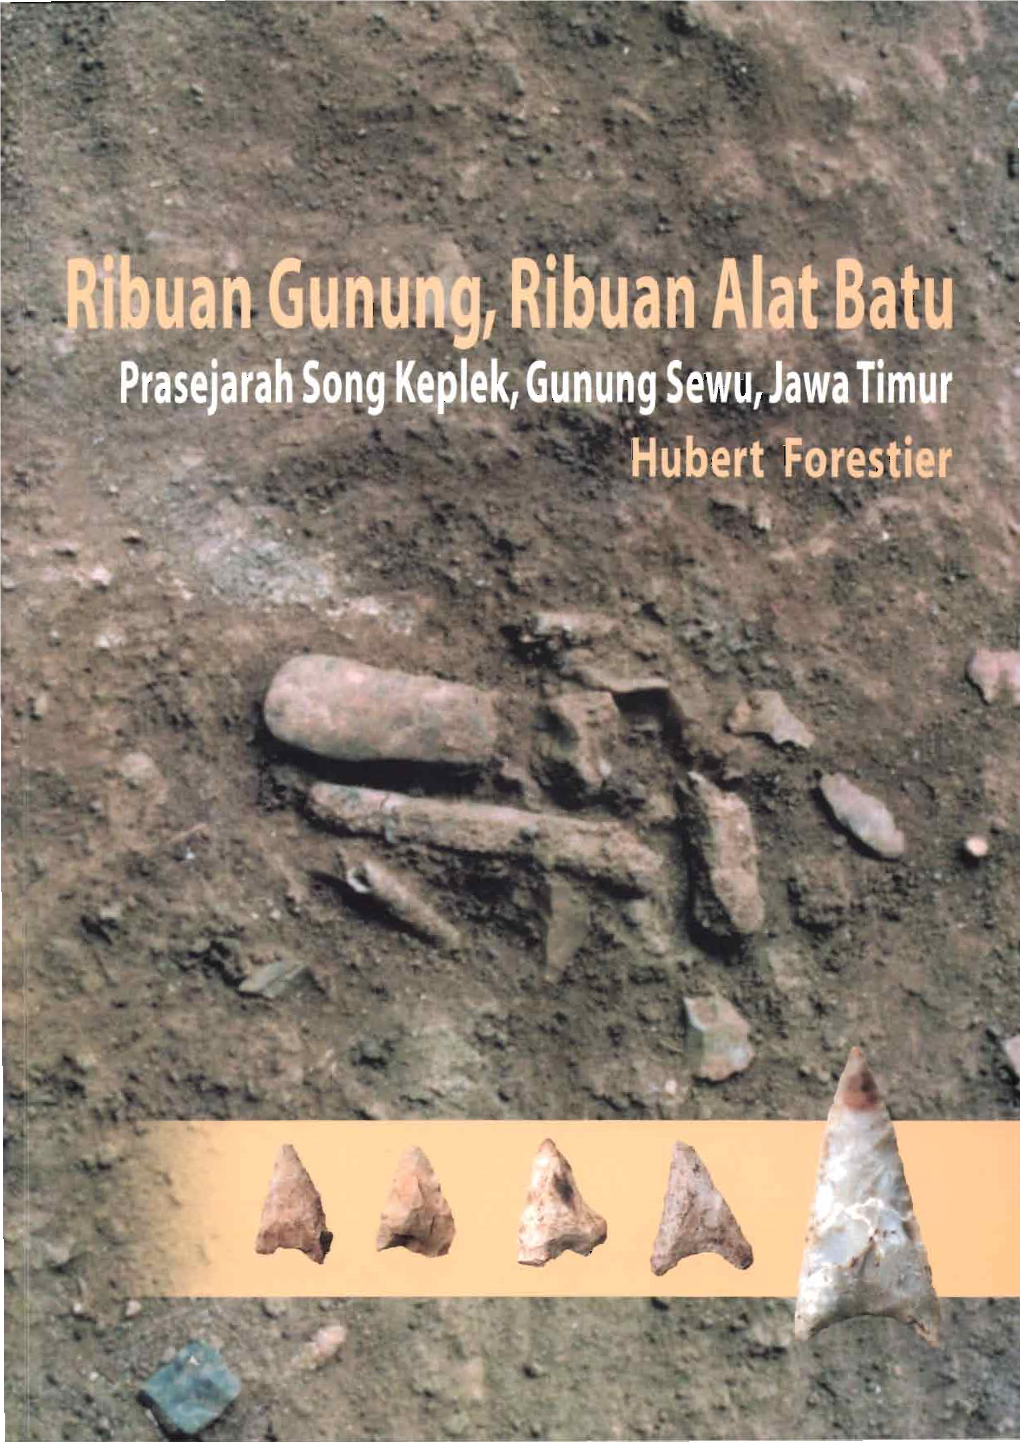 Prasejarah Song Keplek Gunung Sewu, Jawa Timur